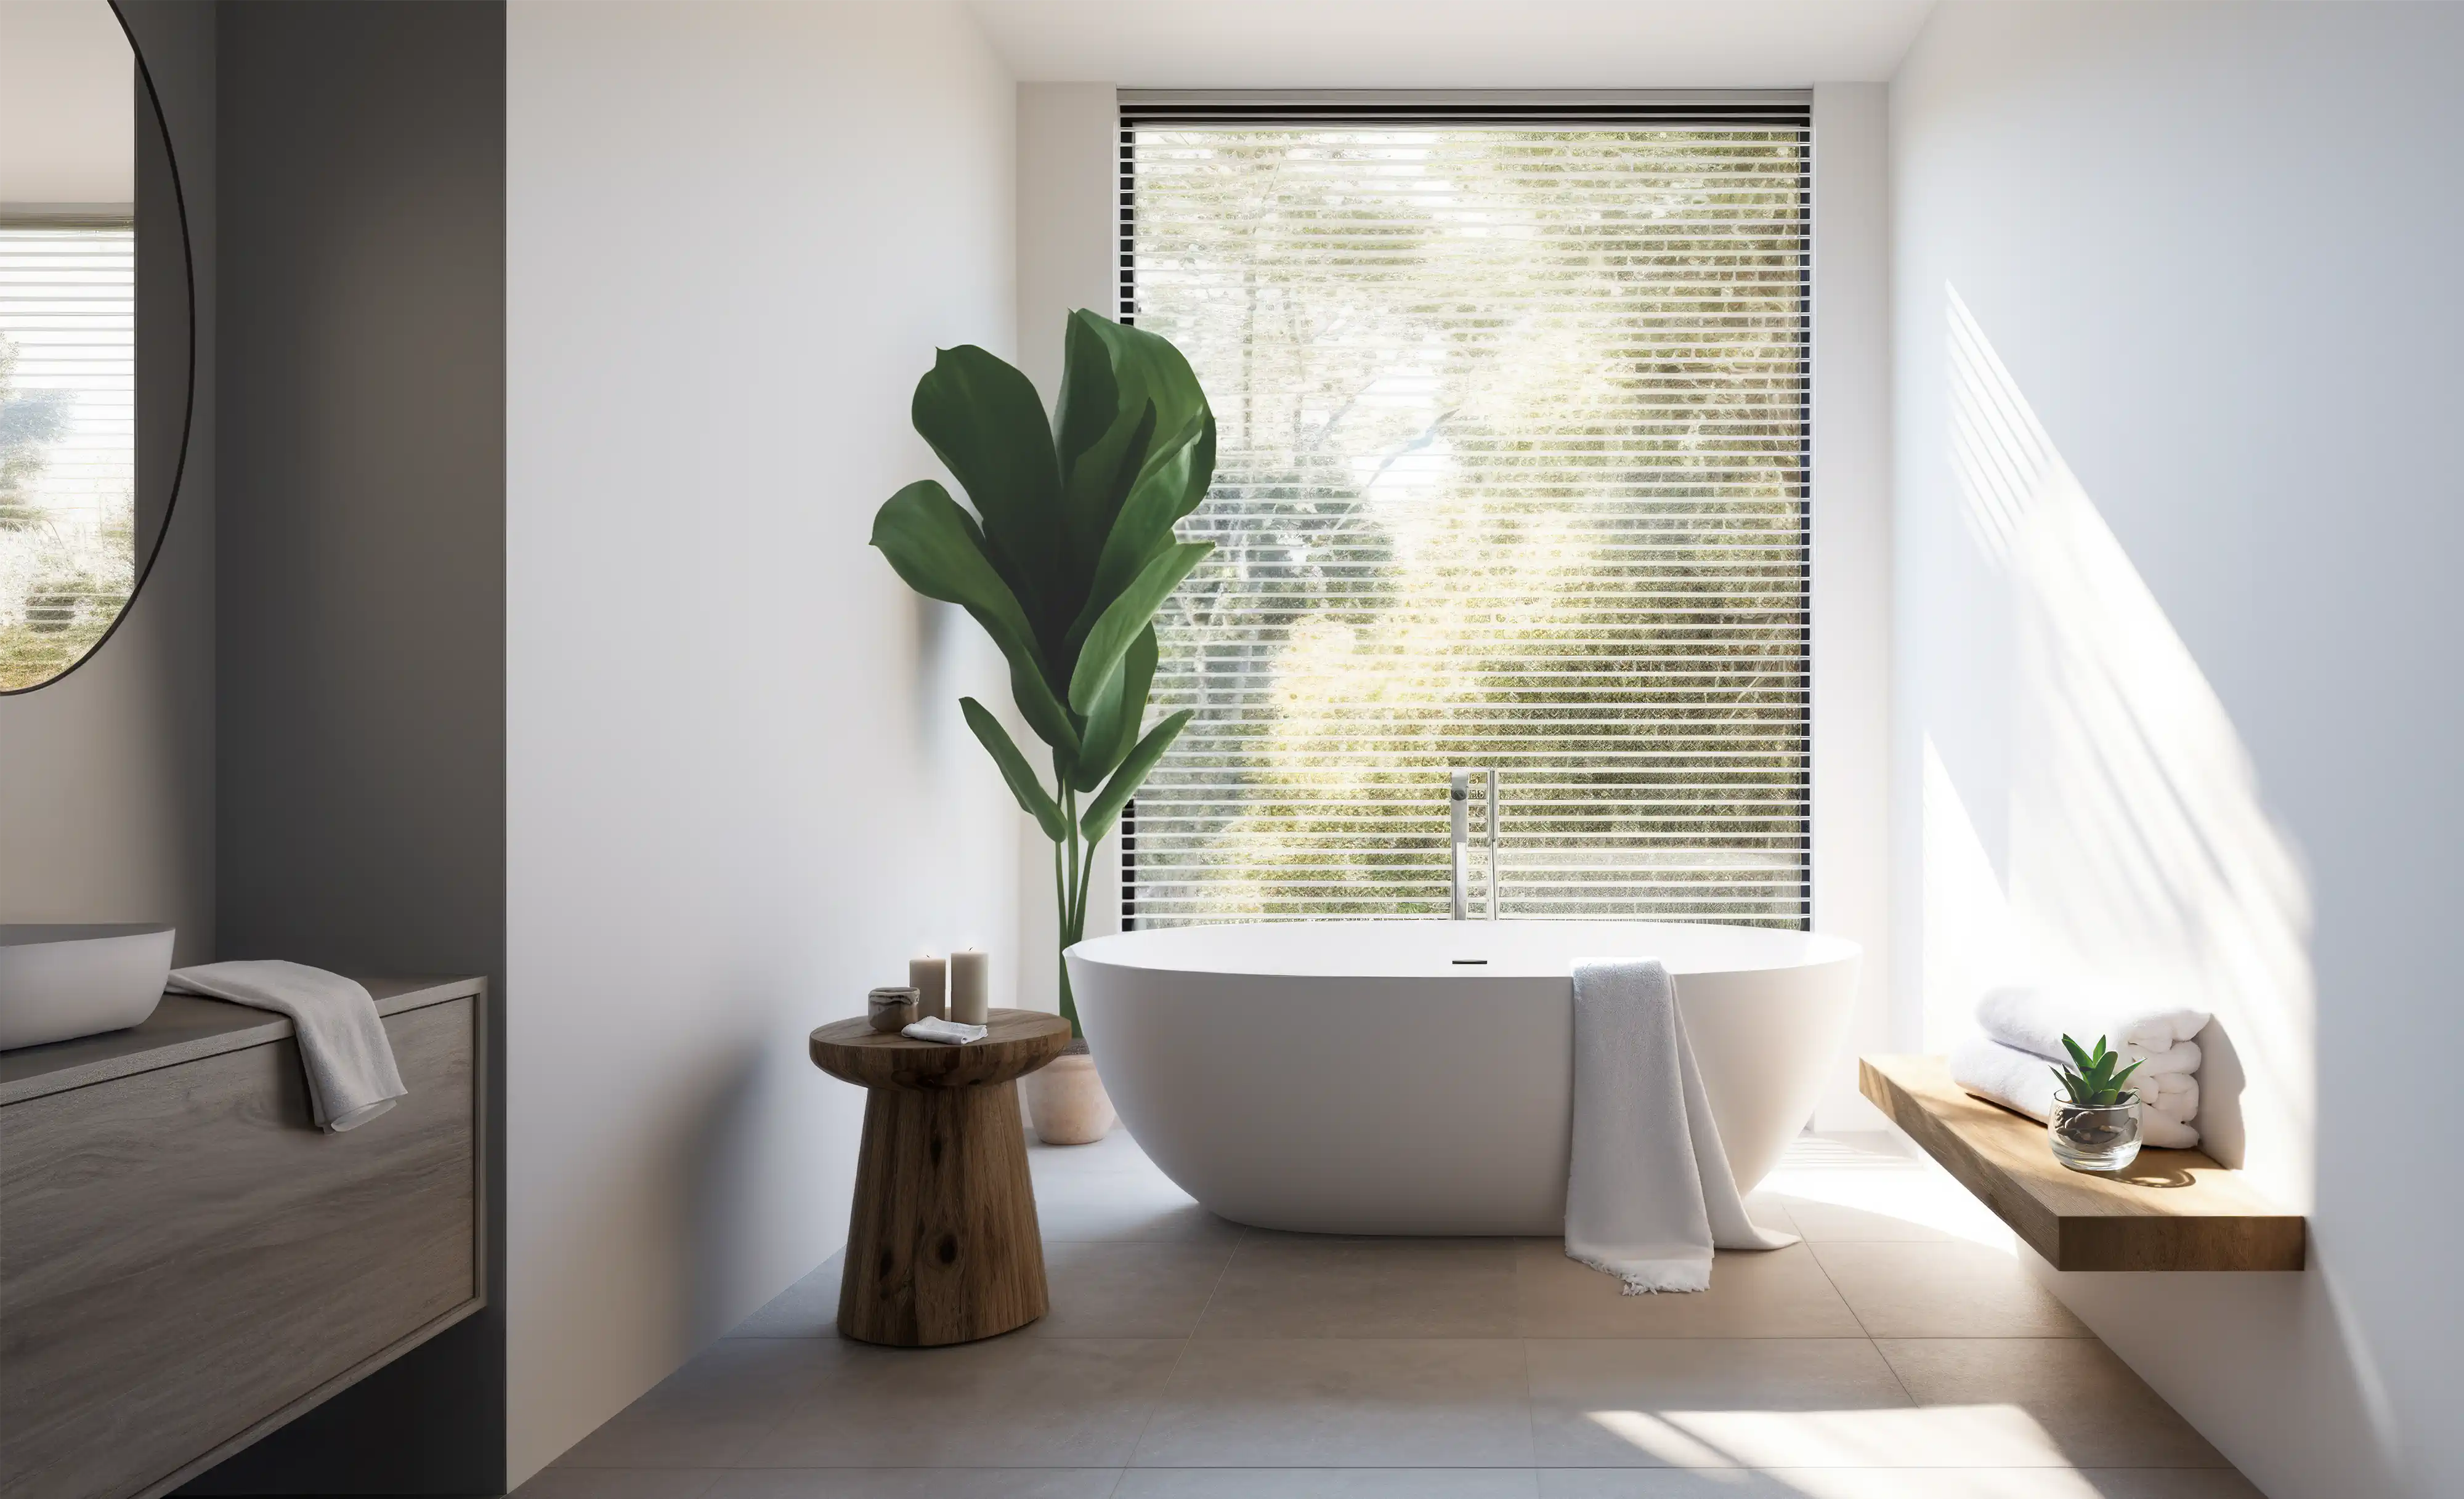 Une salle de bain moderne avec une baignoire autoportante, une grande fenêtre avec une vue verdoyante et des accents de bois, intérieur signé Sarah Brown Design